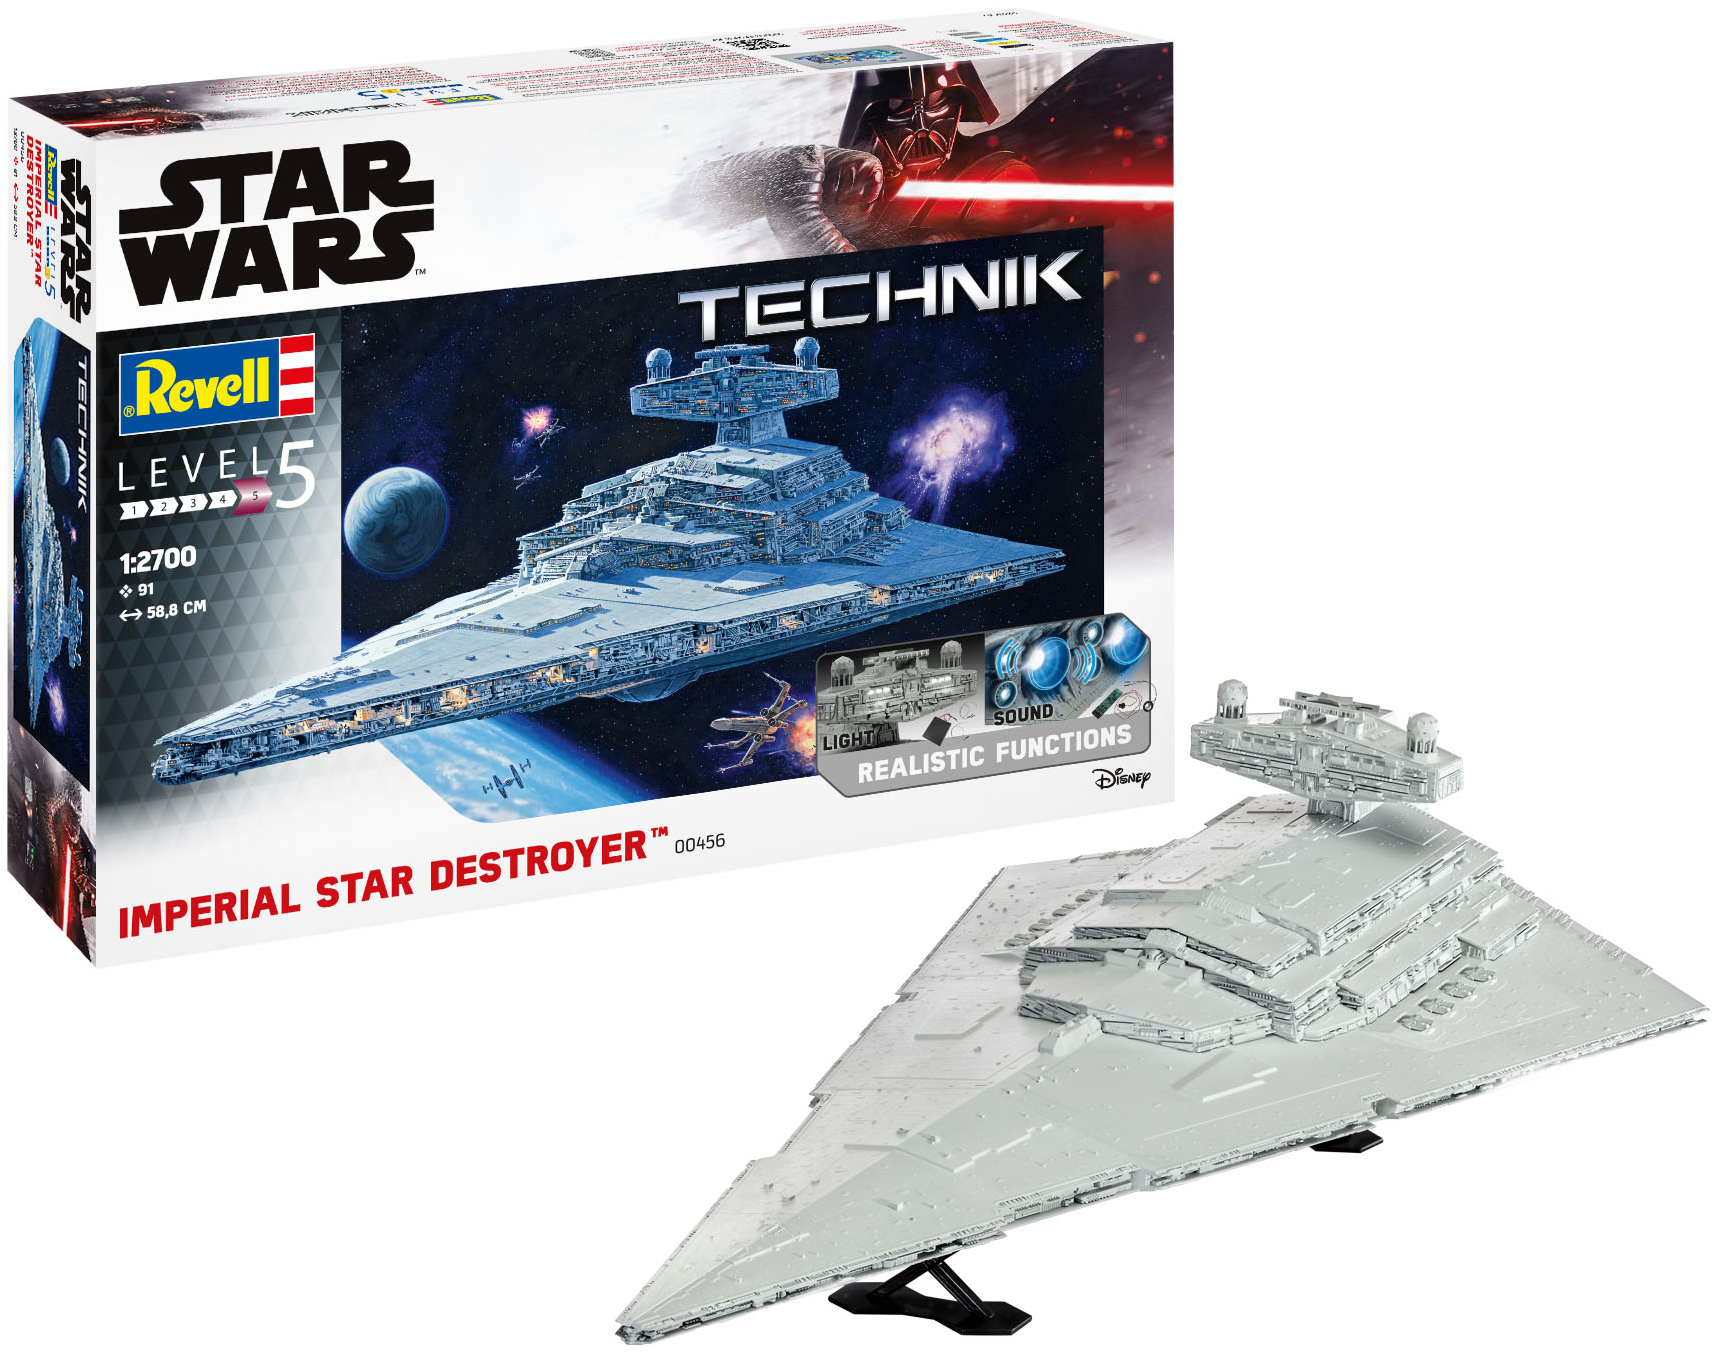 Revell Star Wars Imperial Star Destroyer Kit Technik